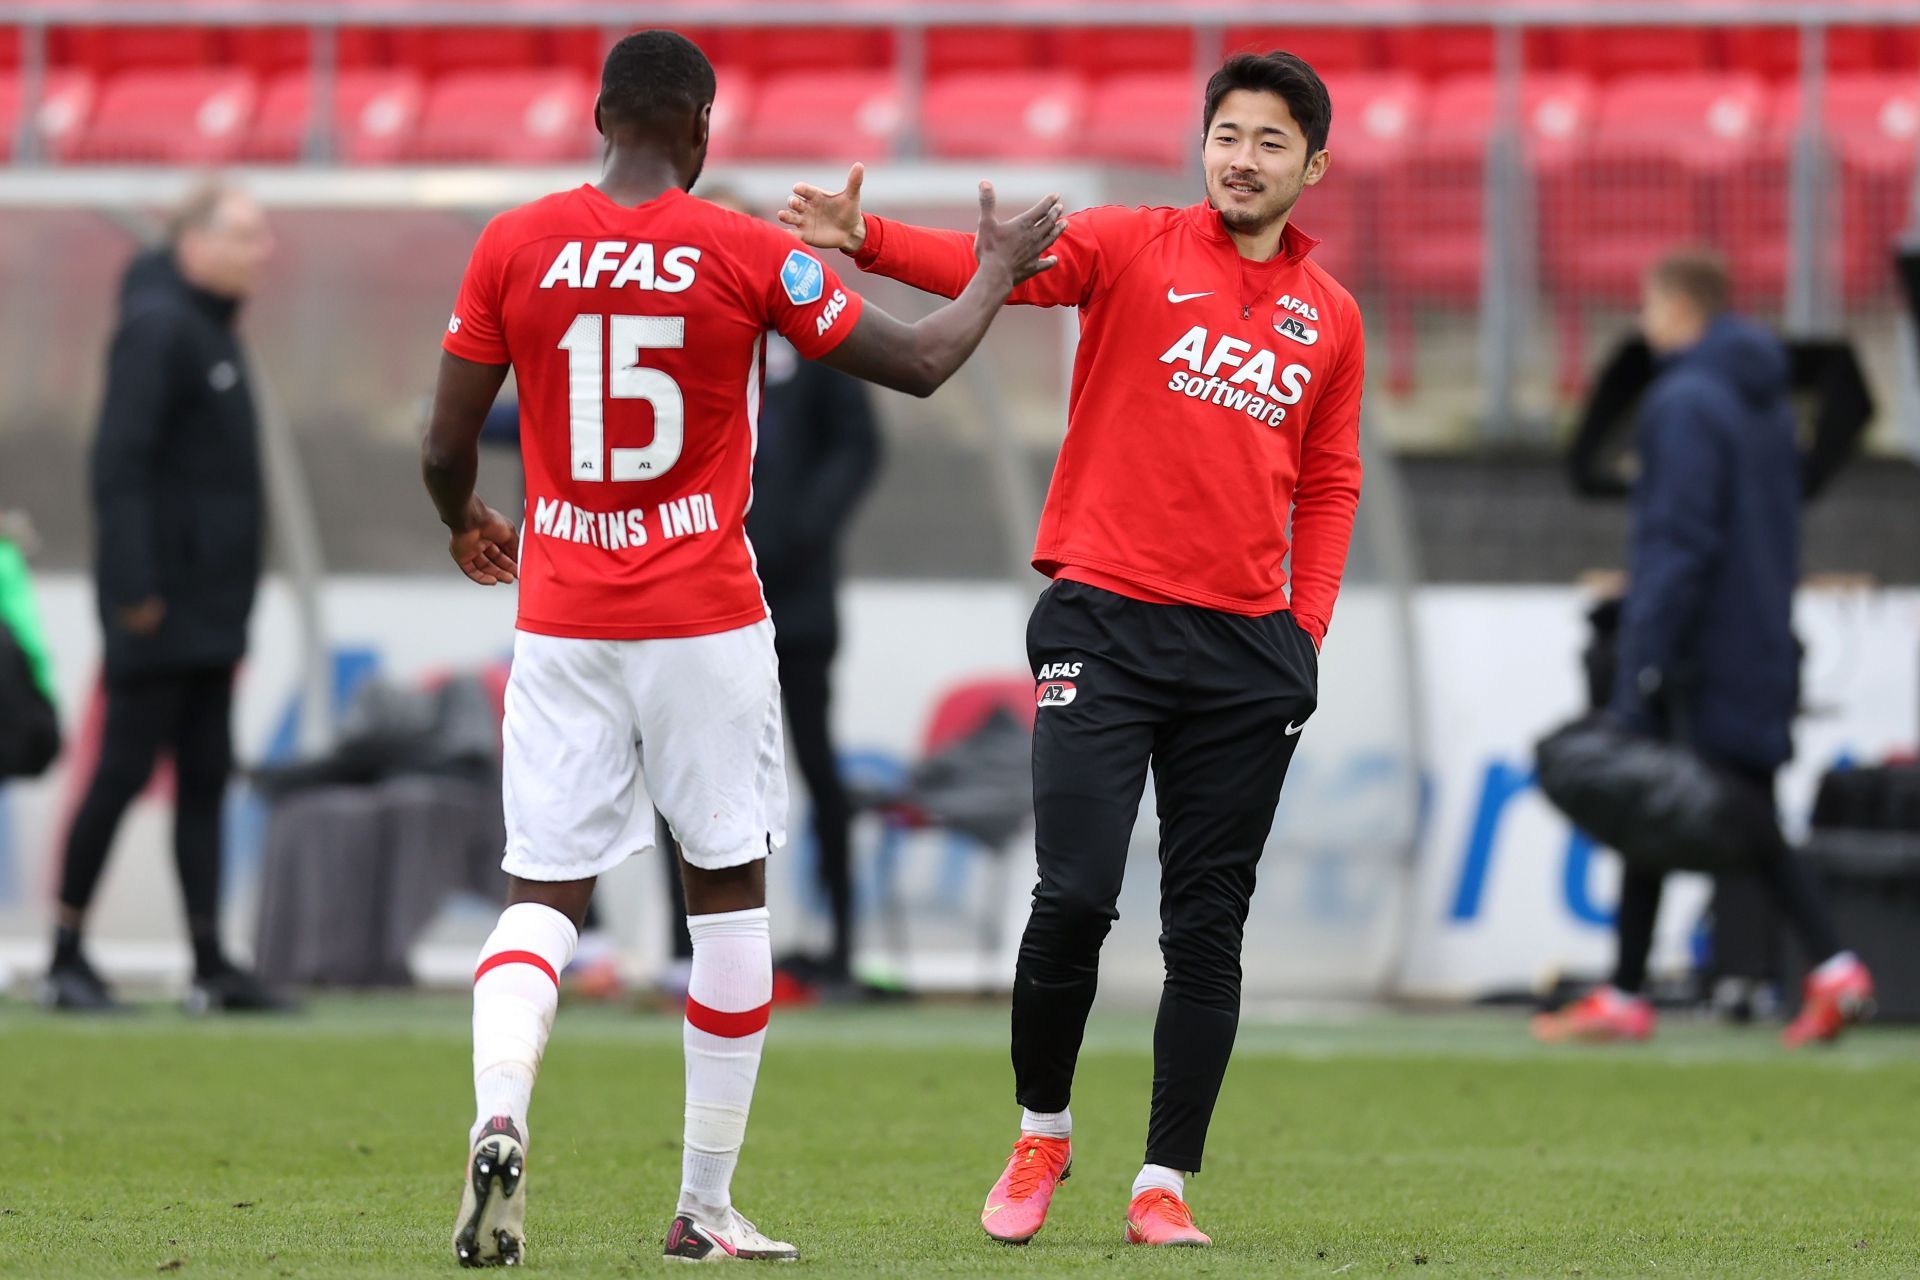 AZ Alkmaar play Vitesse on Saturday